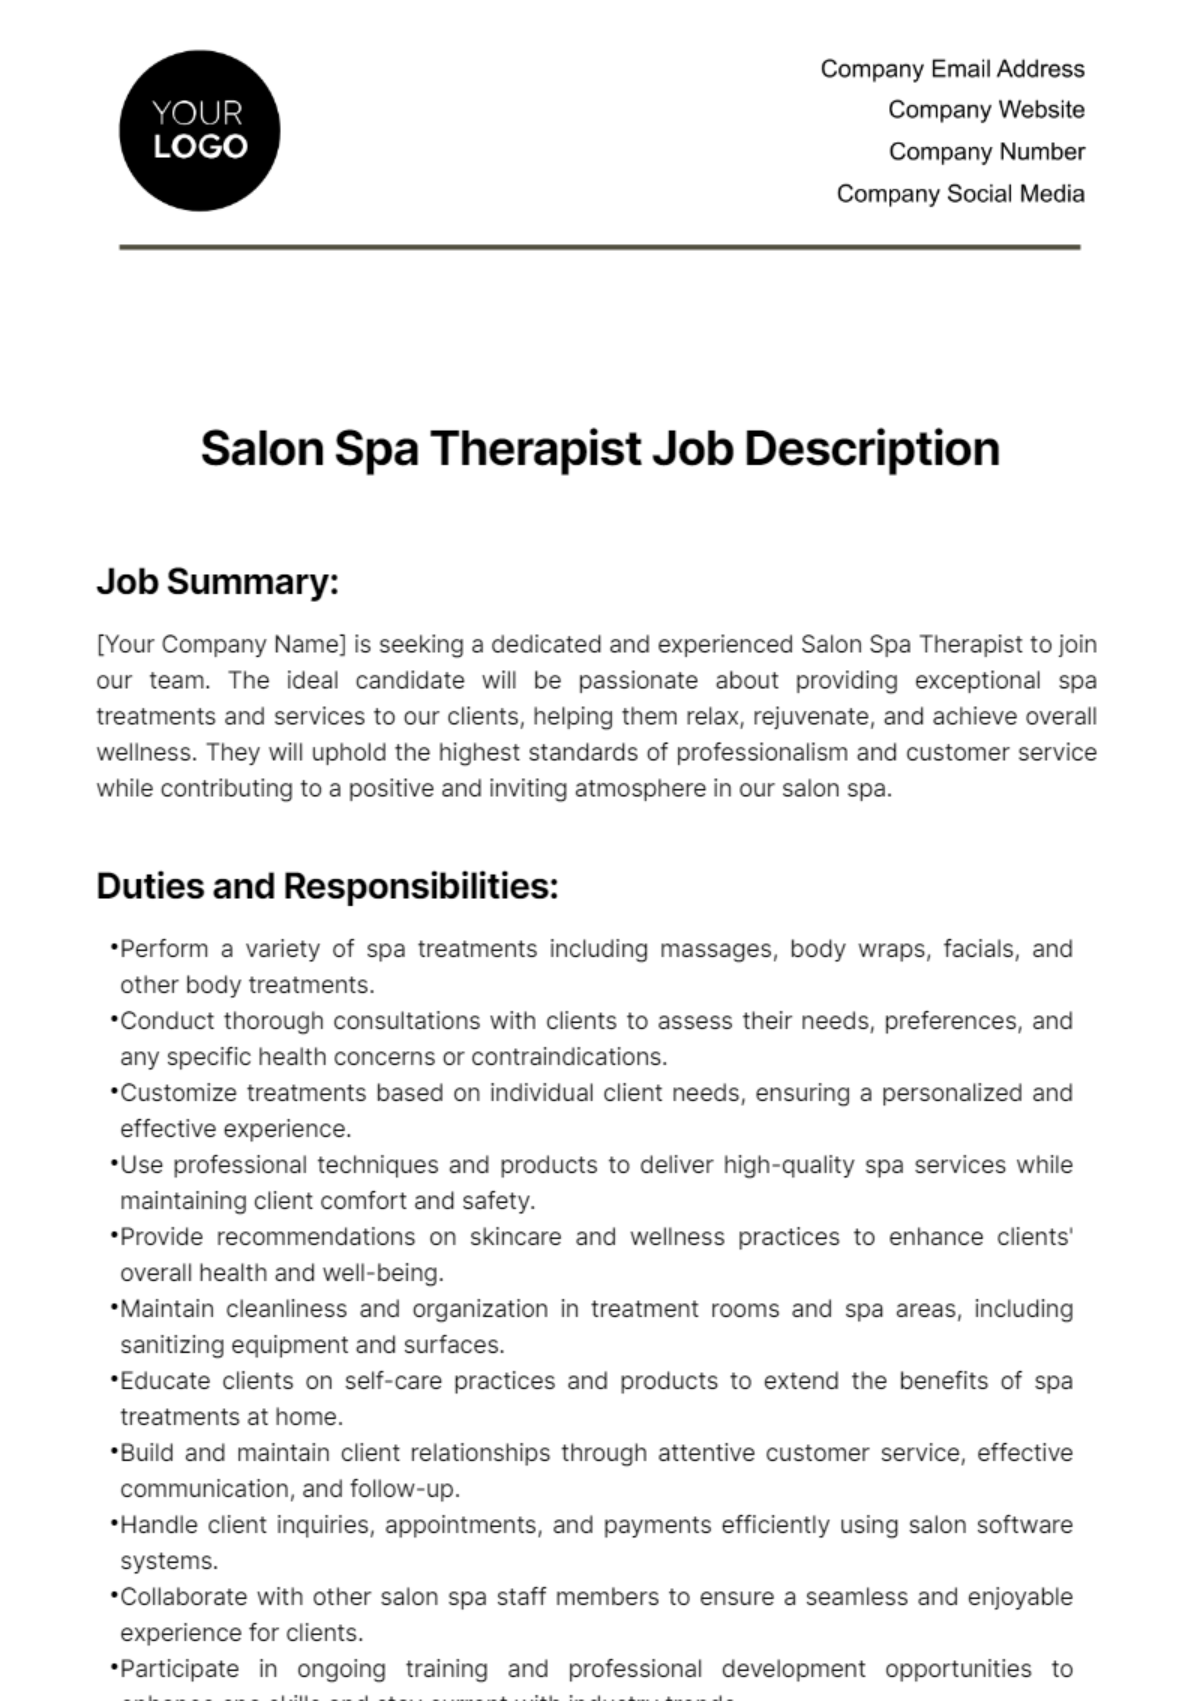 Free Salon Spa Therapist Job Description Template